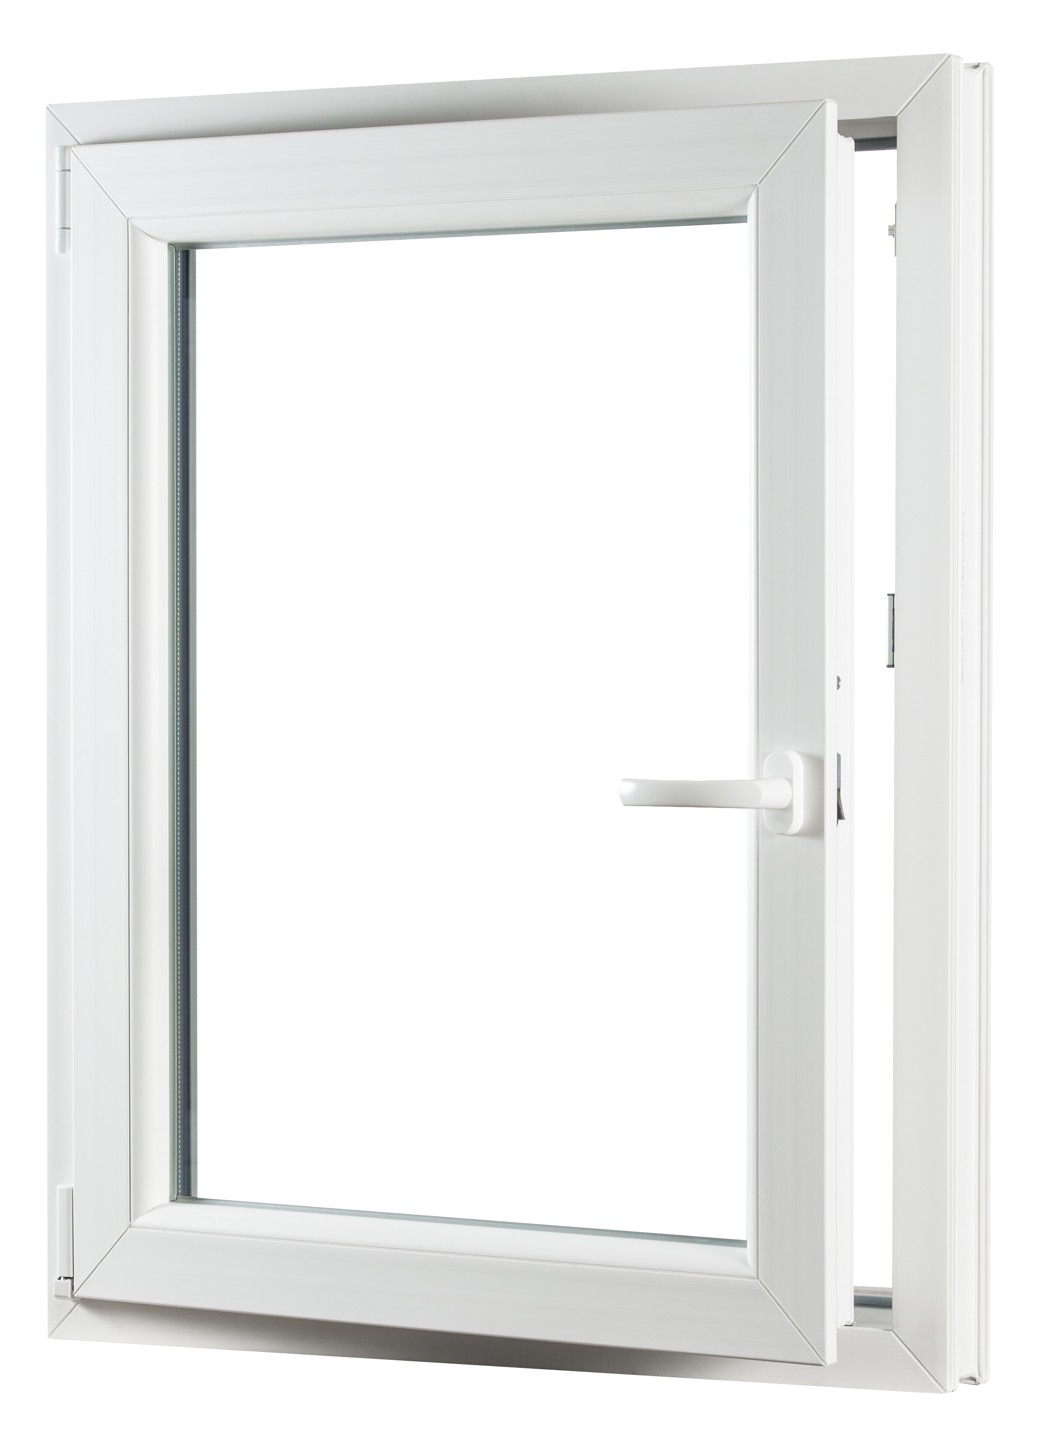 Jednokřídlé plastové okno REHAU Smartline+, otvíravo-sklopné levé - SKLADOVÁ-OKNA.cz - 650 x 800